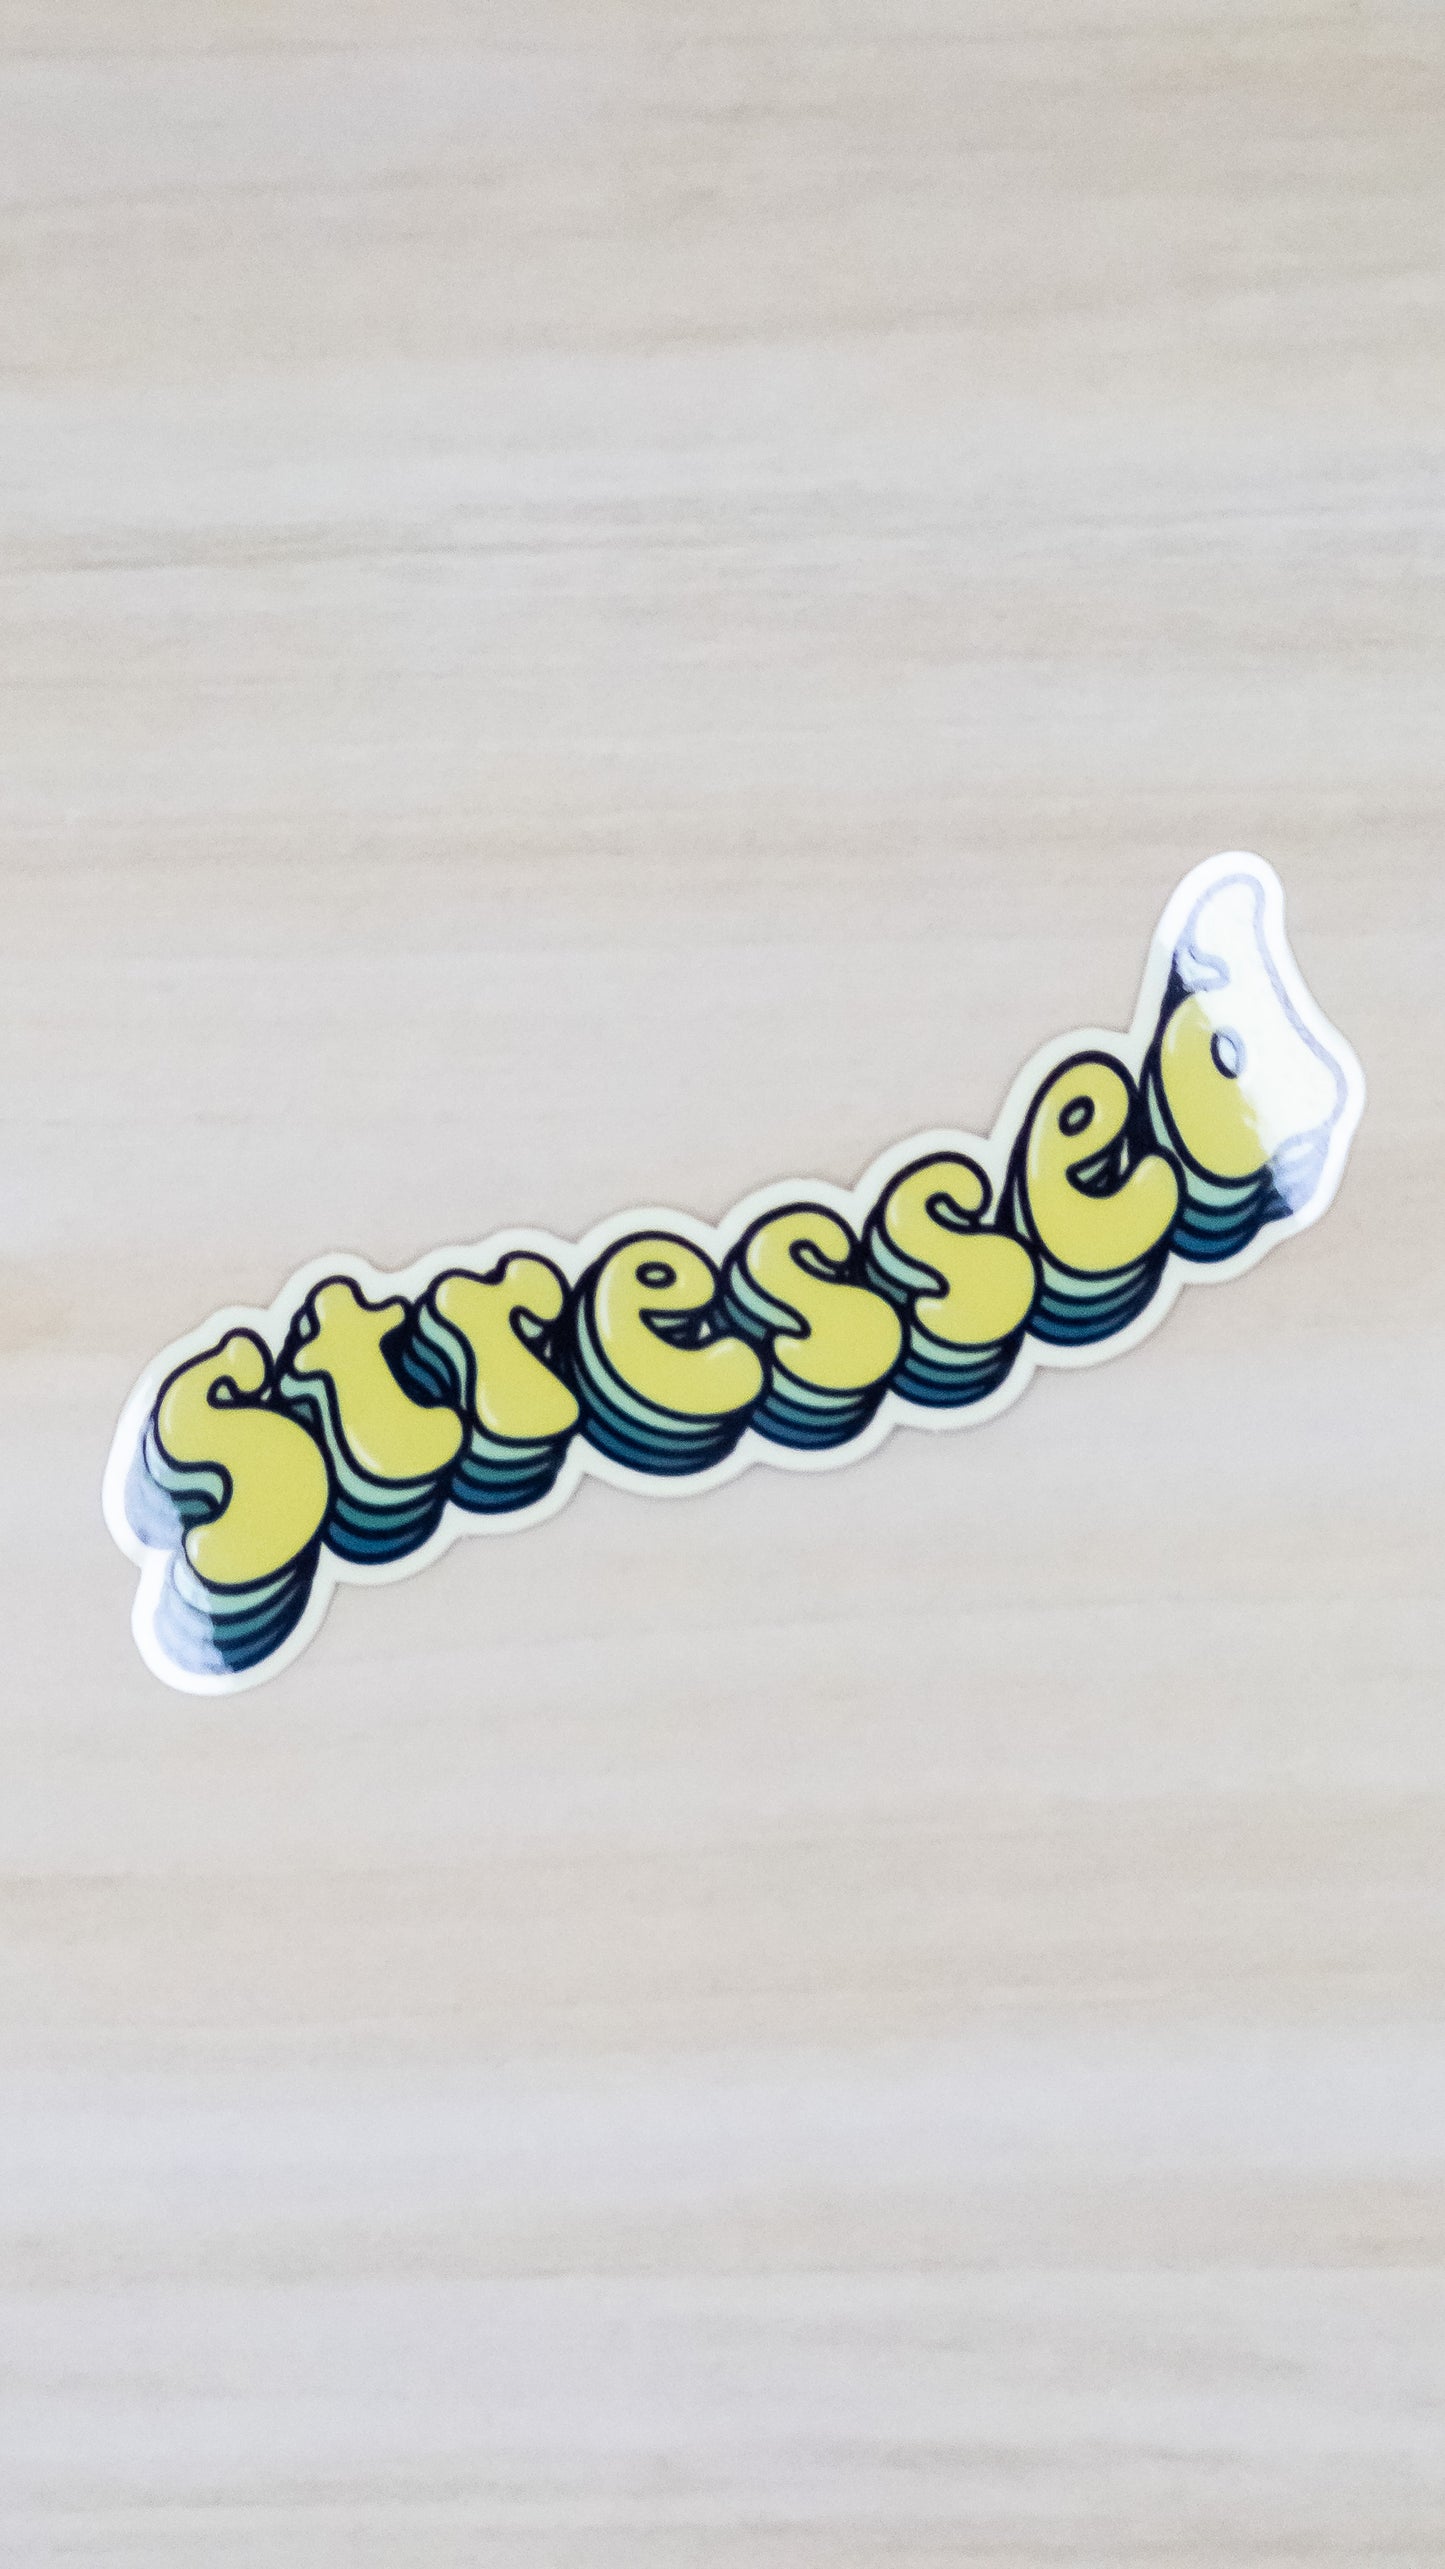 Stressed Vinyl Sticker 4 inch